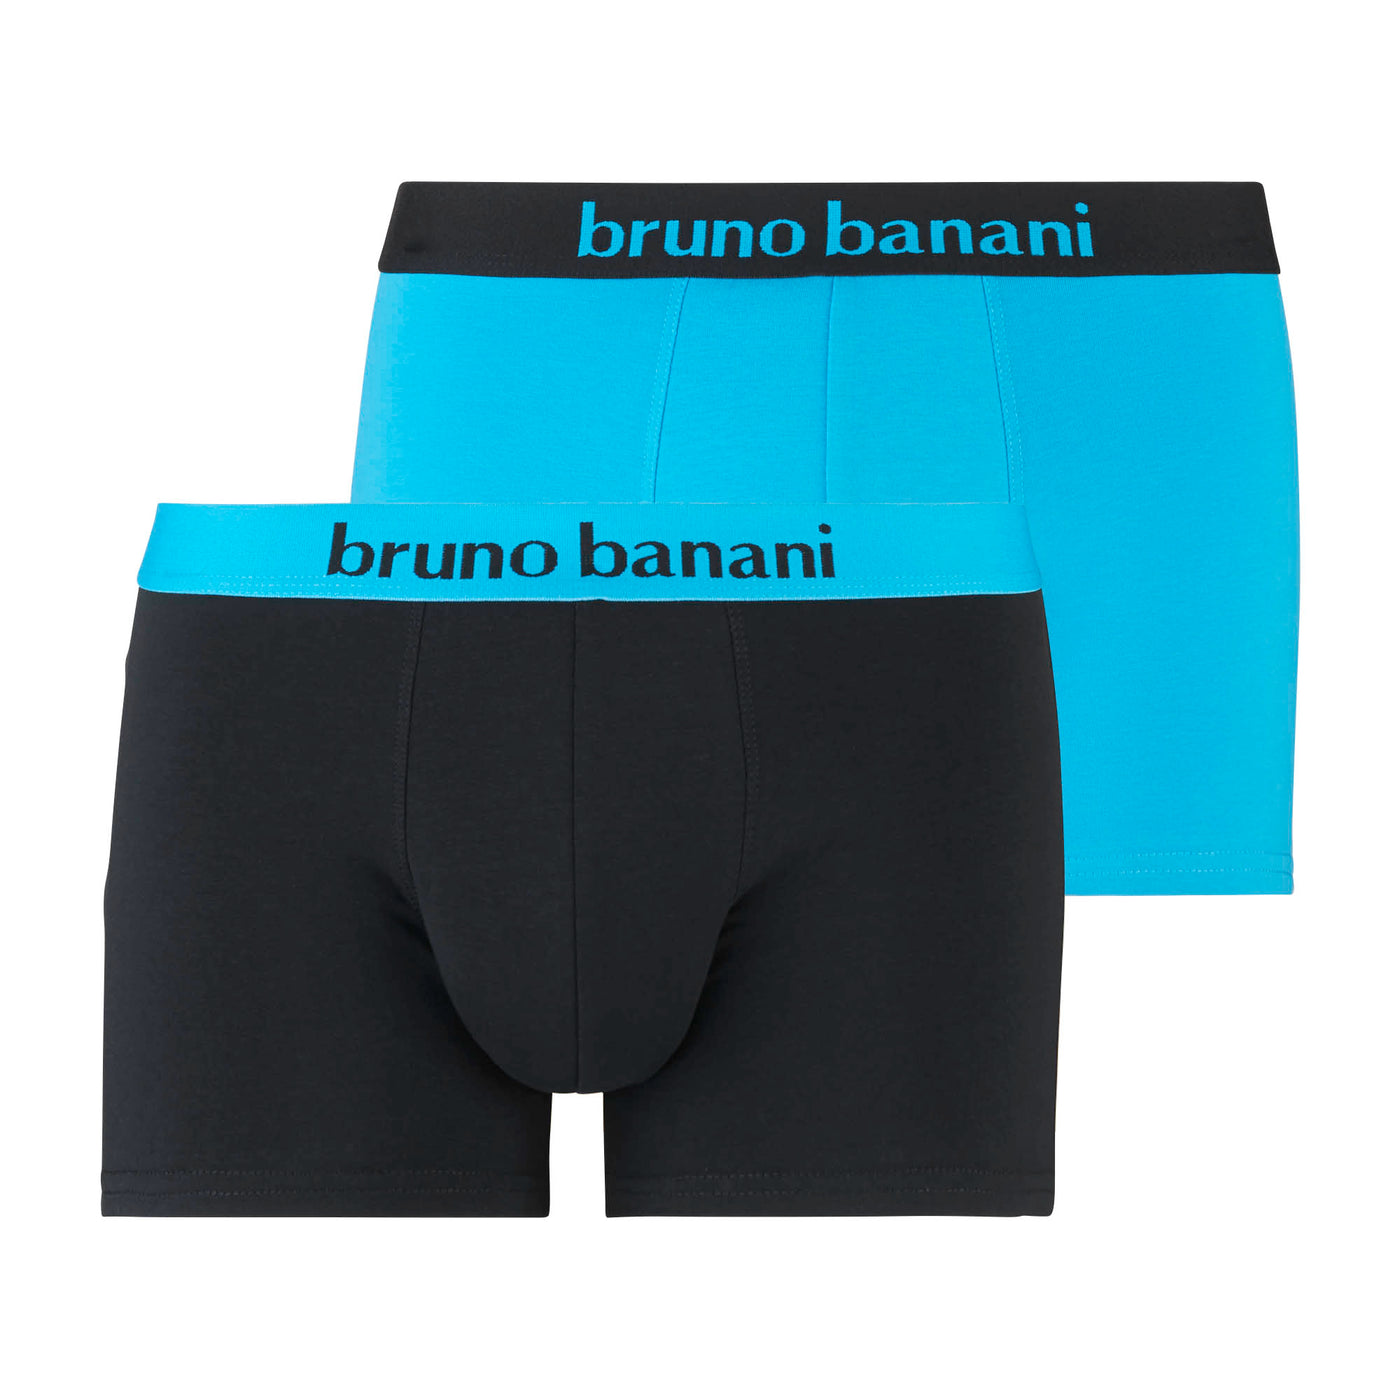 bruno banani – Flowing – Shorts 2 Pack